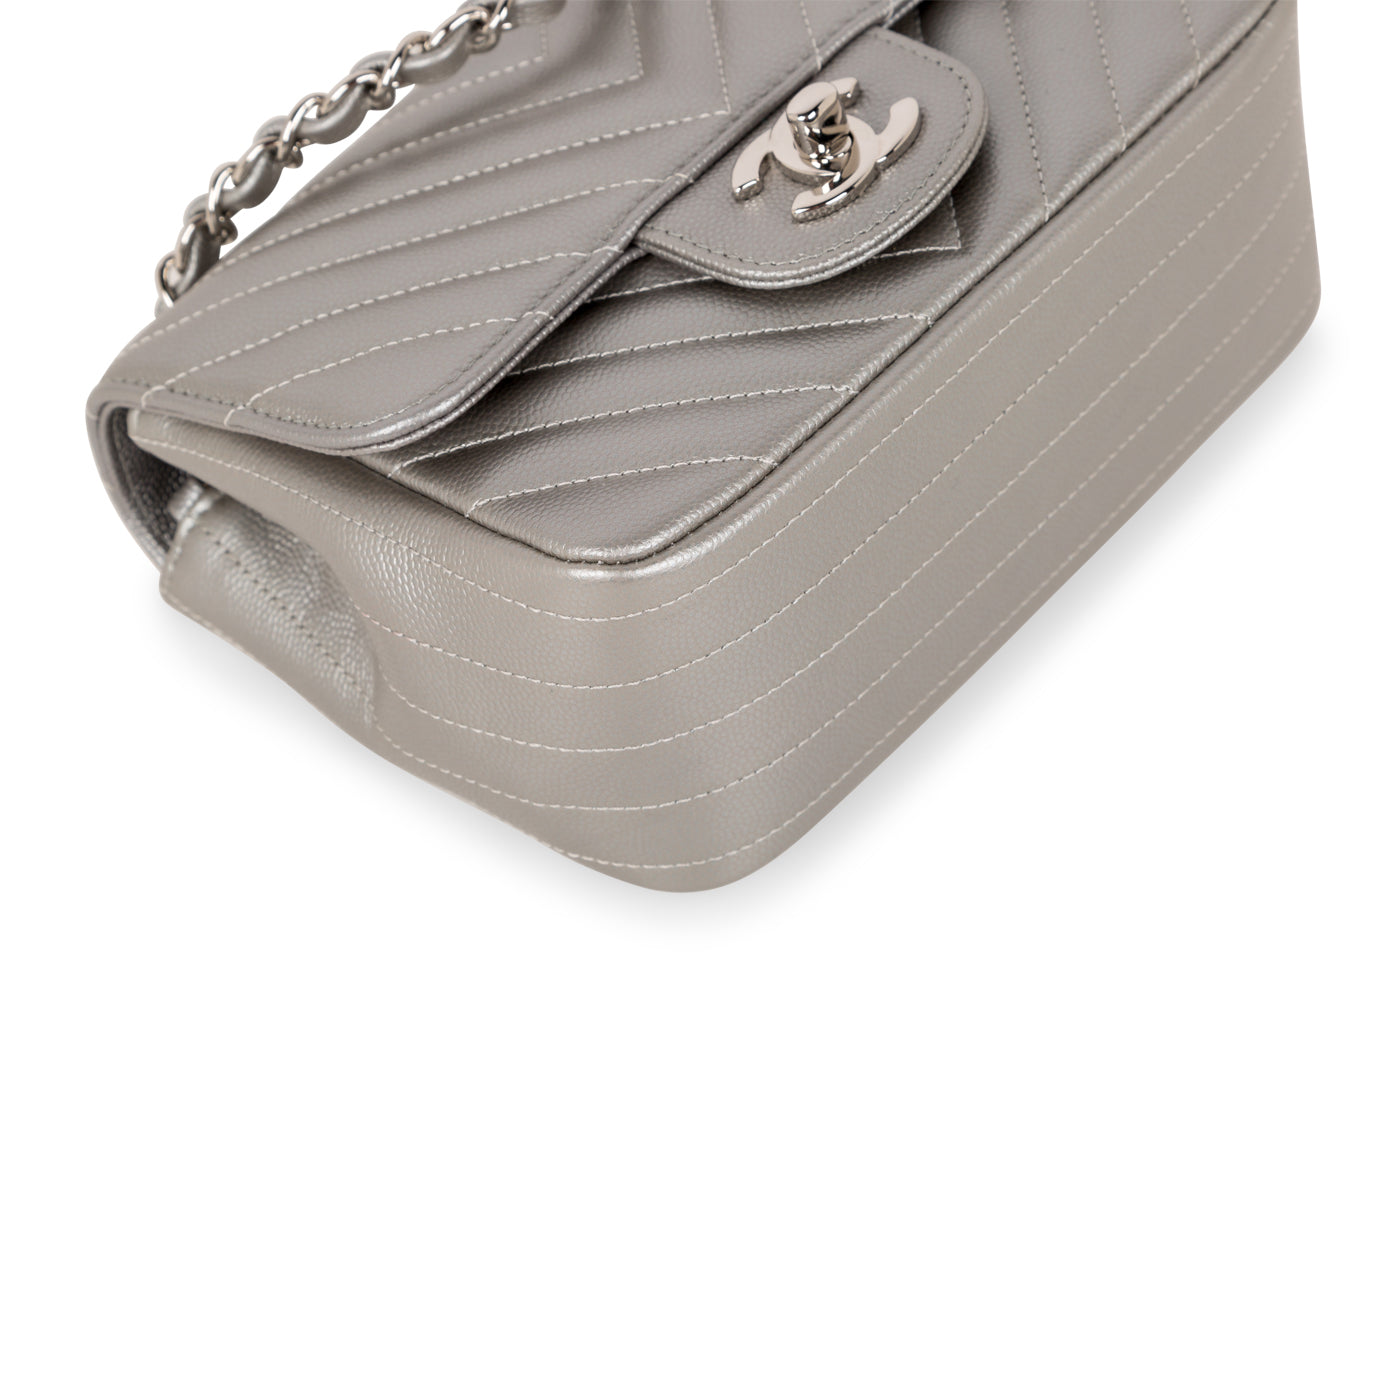 Chanel - Mini Square Classic Flap Bag - Silver Chevron Caviar